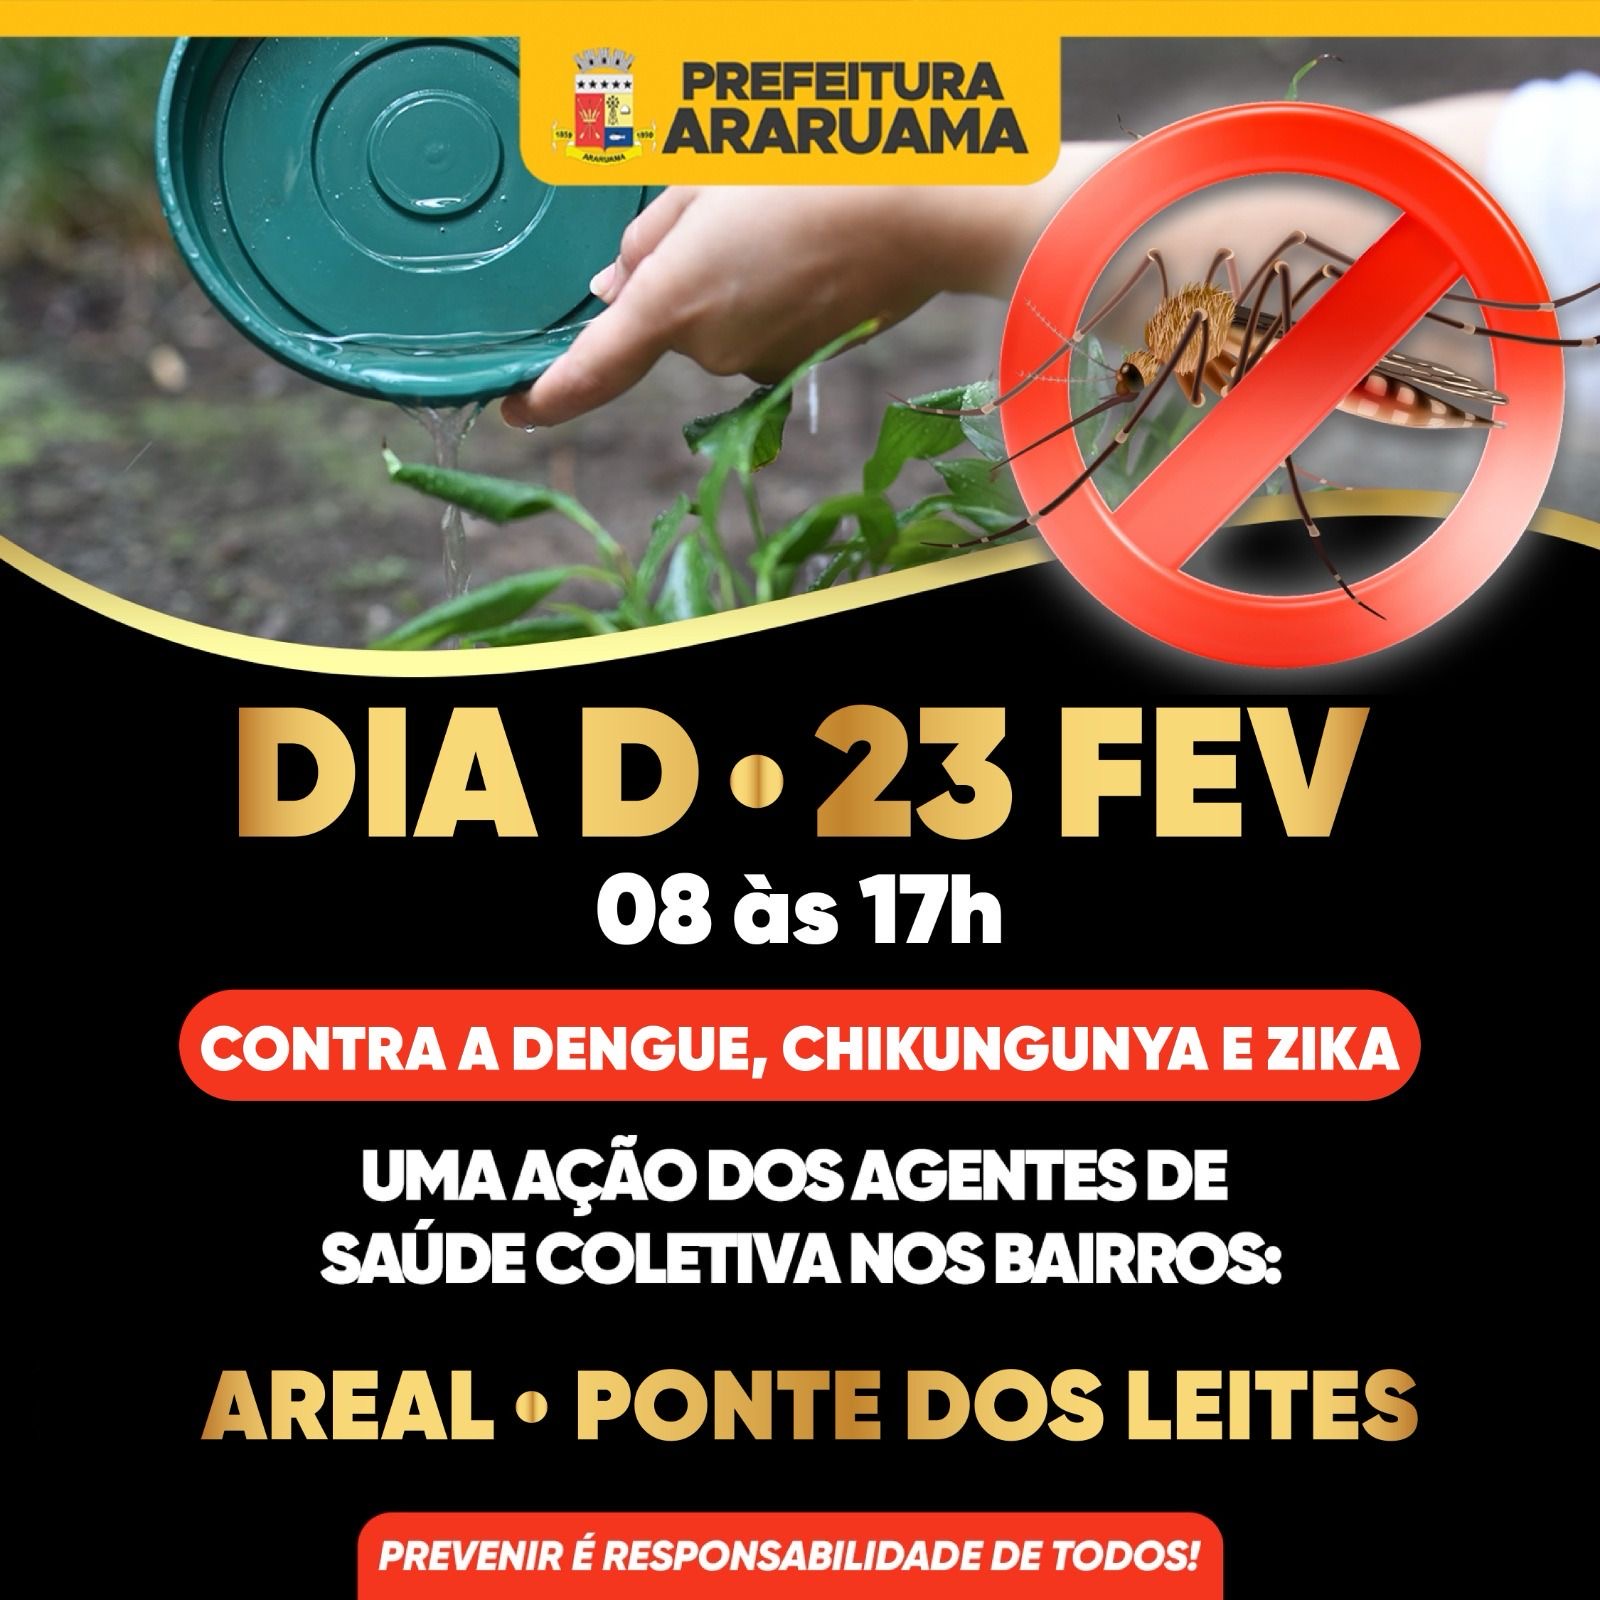 Prefeitura vai realizar o Dia D contra a dengue nos bairros Areal e Ponte dos Leites